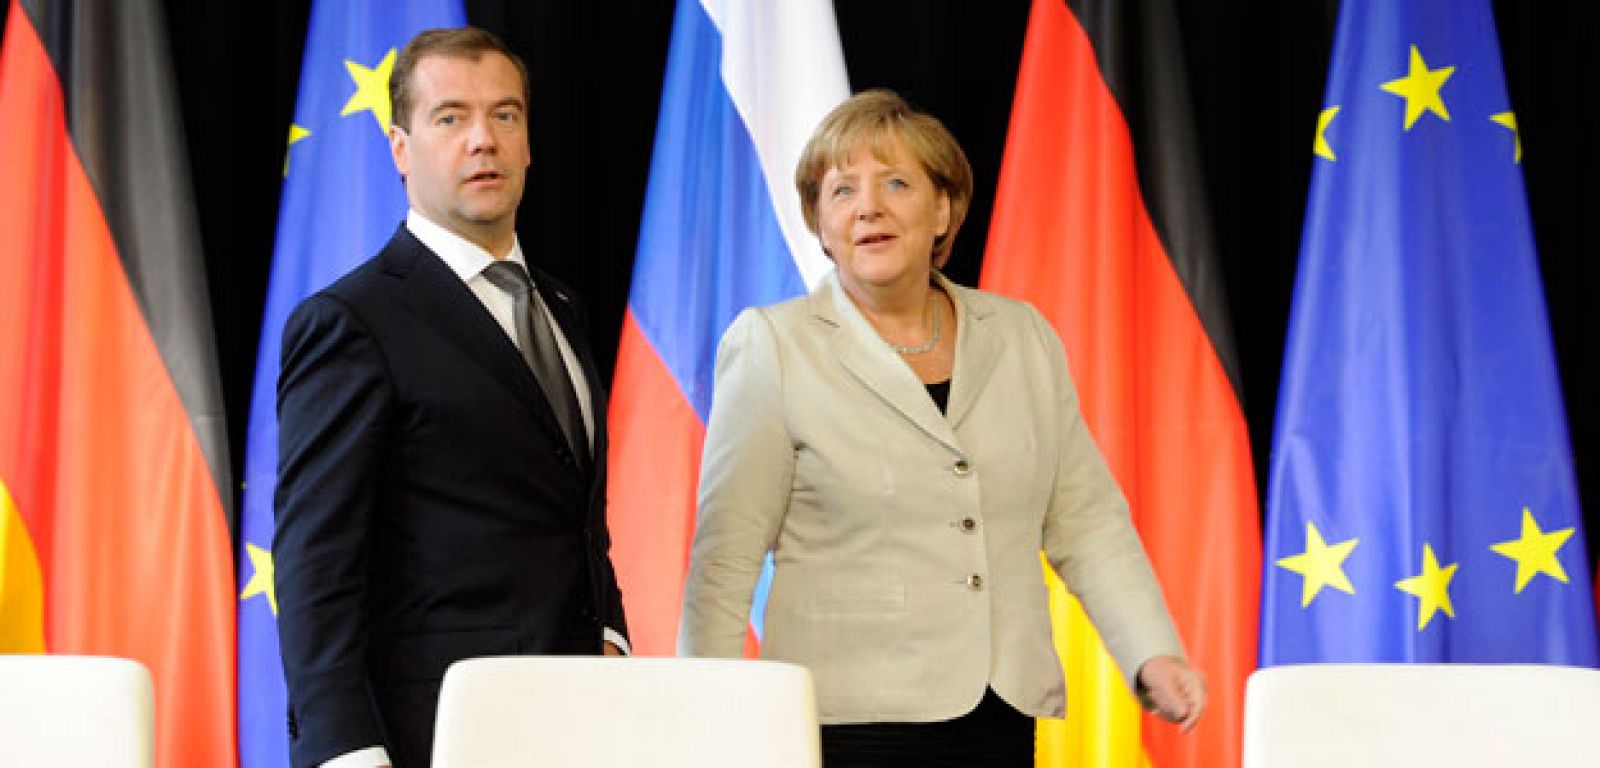 La canciller alemana Angela Merkel, comparece ante los medios junto al presidente de Rusia, Dmitry Medvedev, este martes, en la ciudad alemana de Hanover.